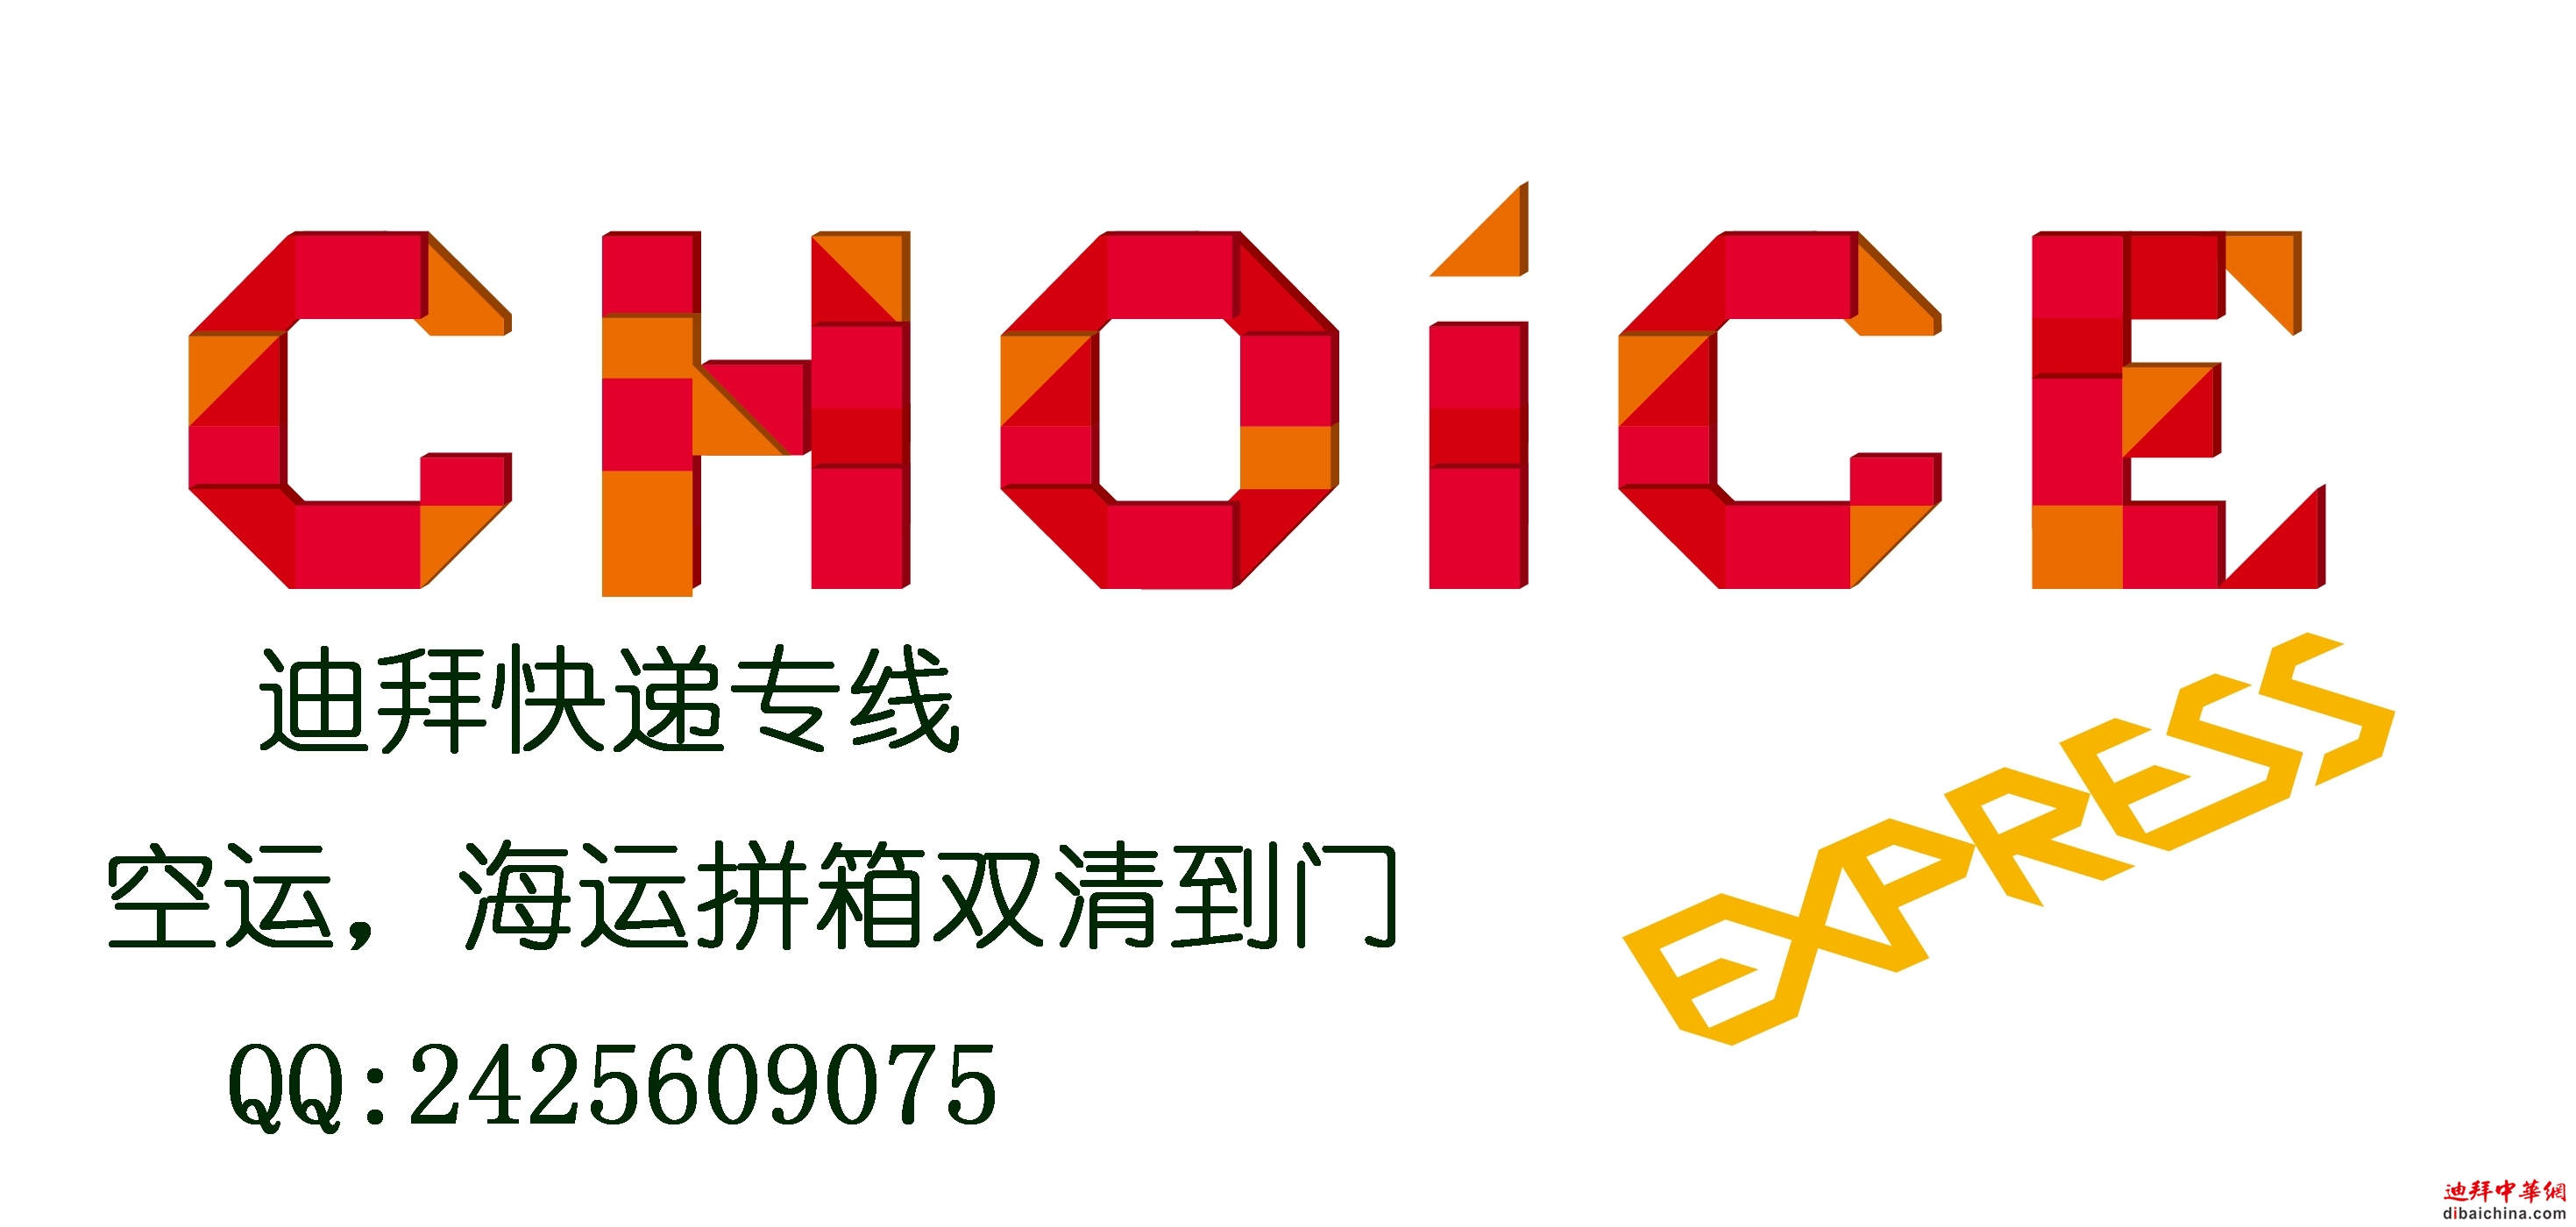 CHOICE  logo-02.jpg